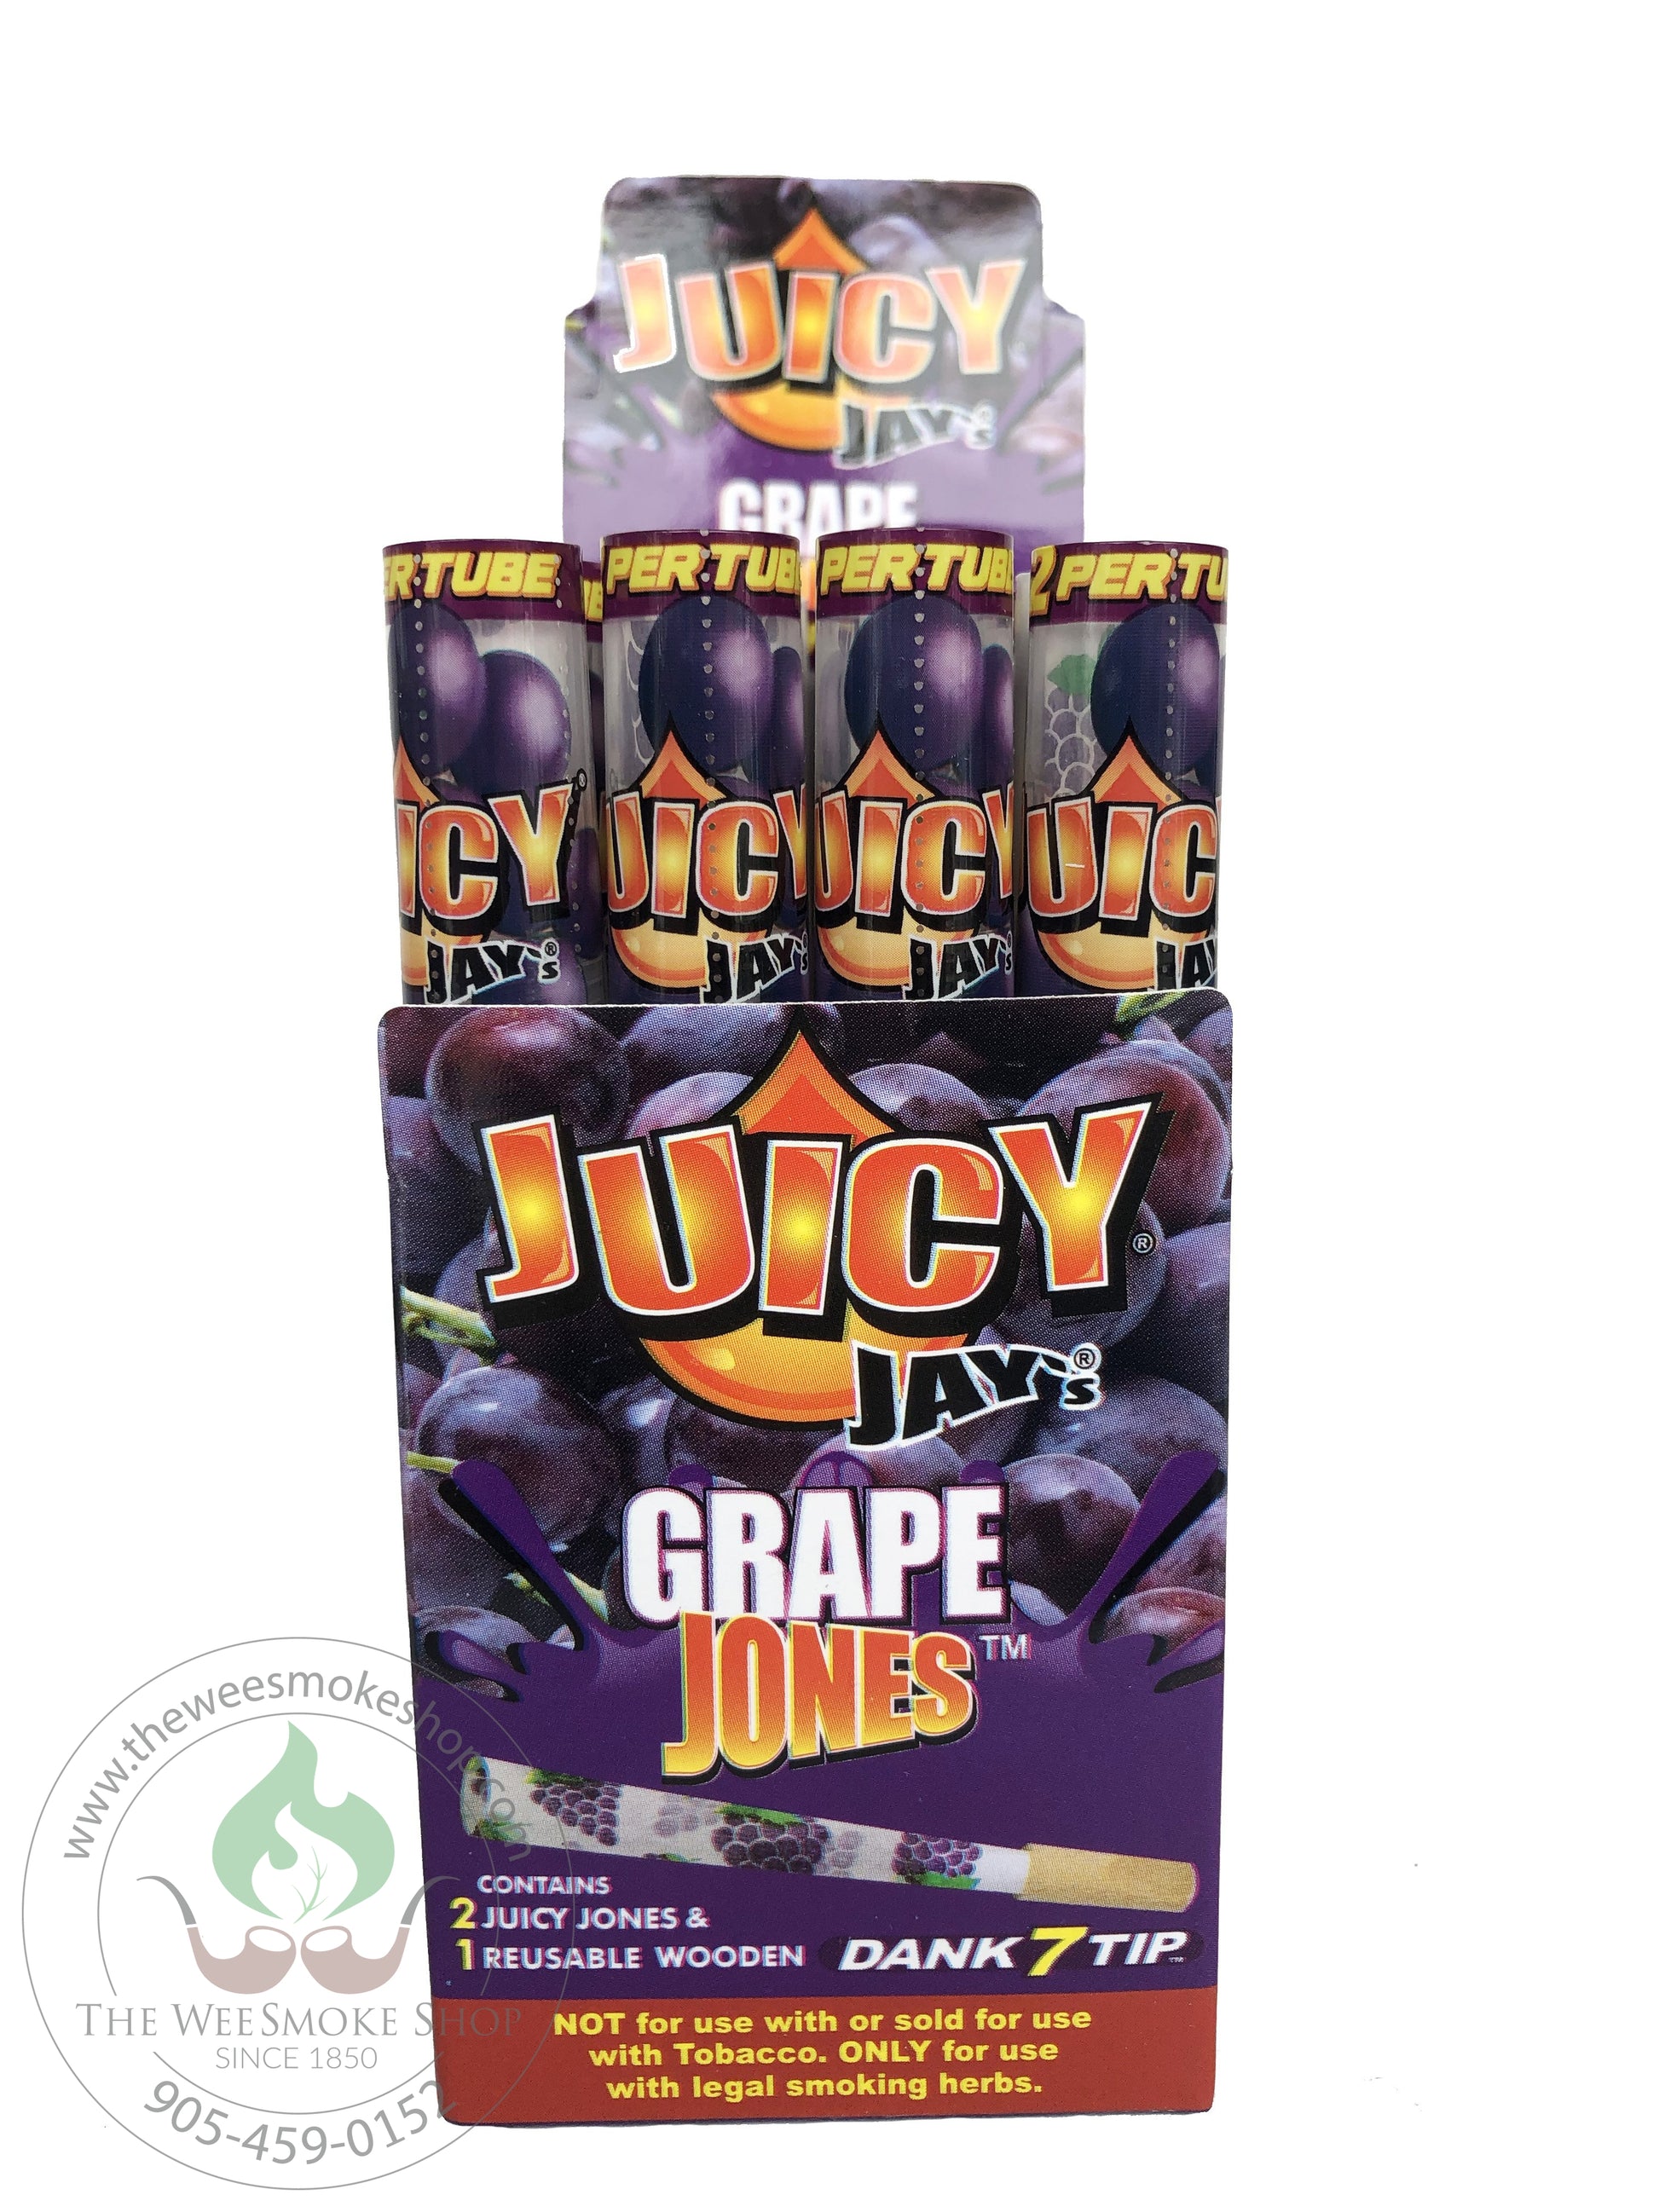 Grape jones juicy jay cones 2 cones and 1 reusable wooden tip.